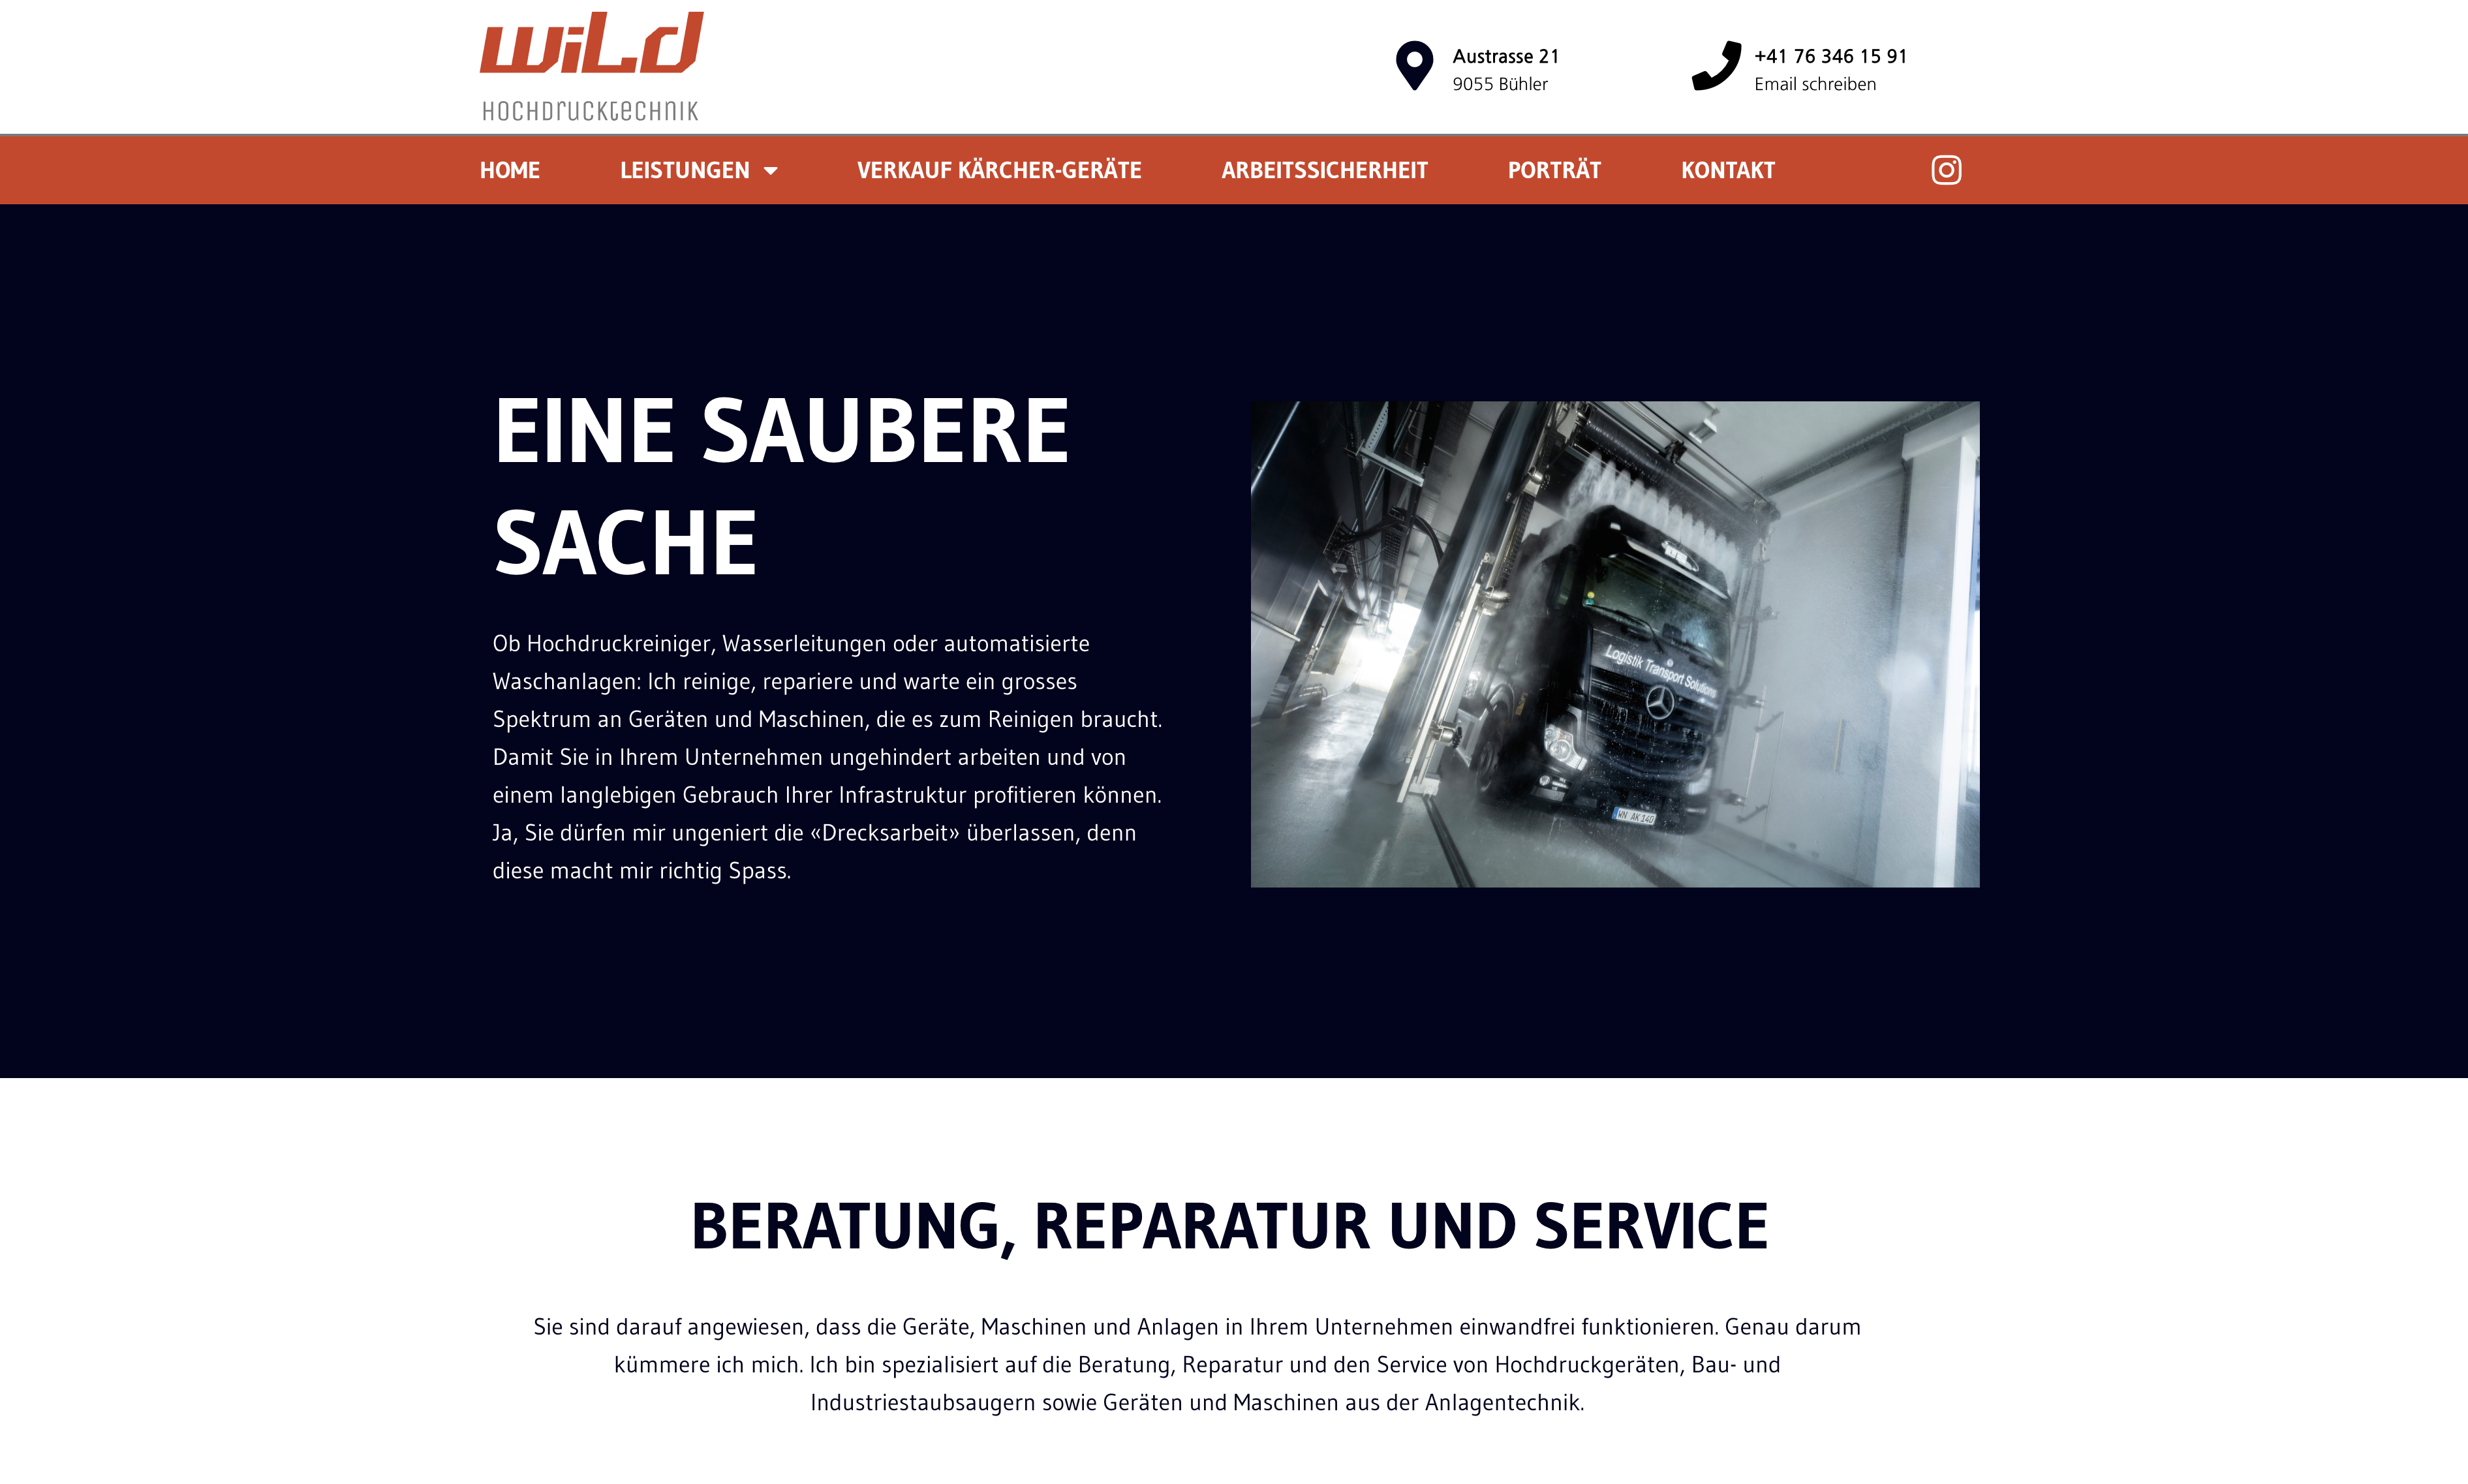 Website Wild Hochdrucktechnik